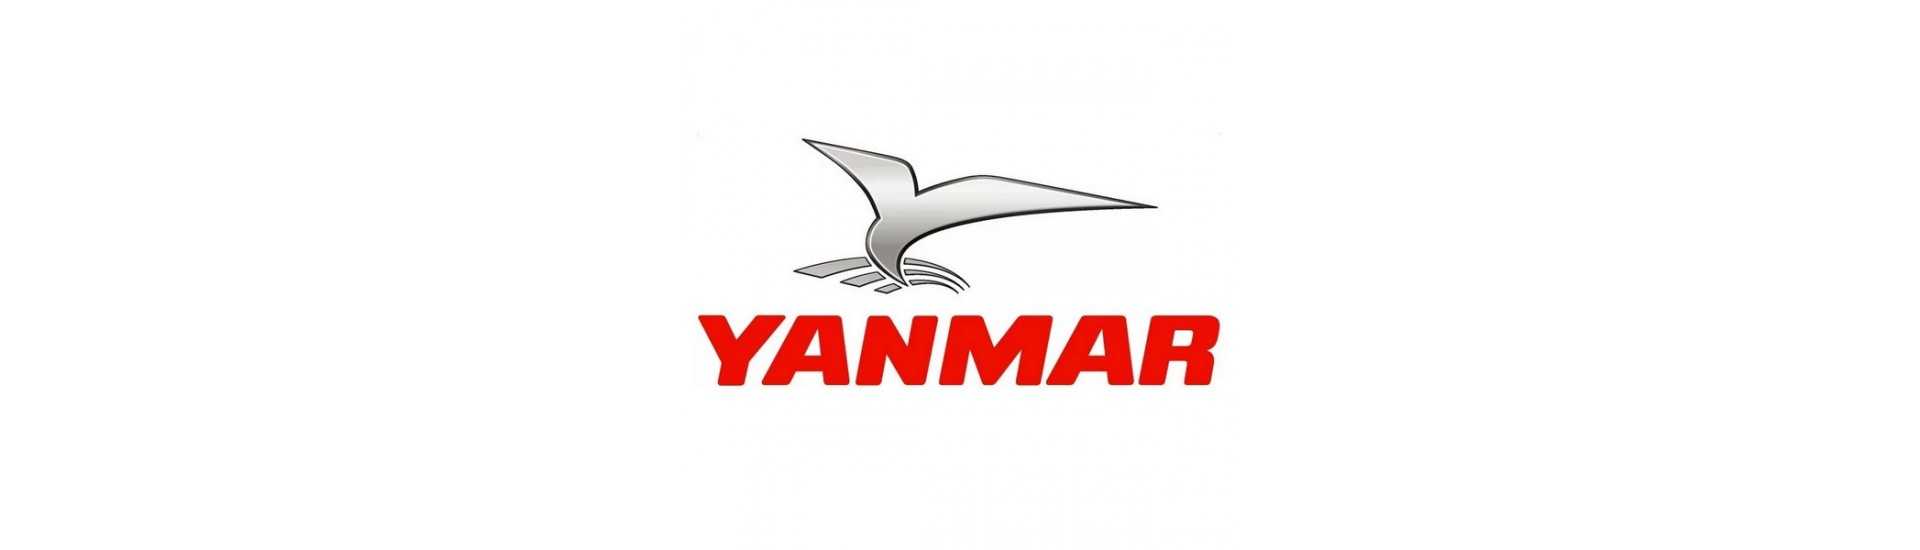 Motor occasion parts Yanmar au meilleur prix